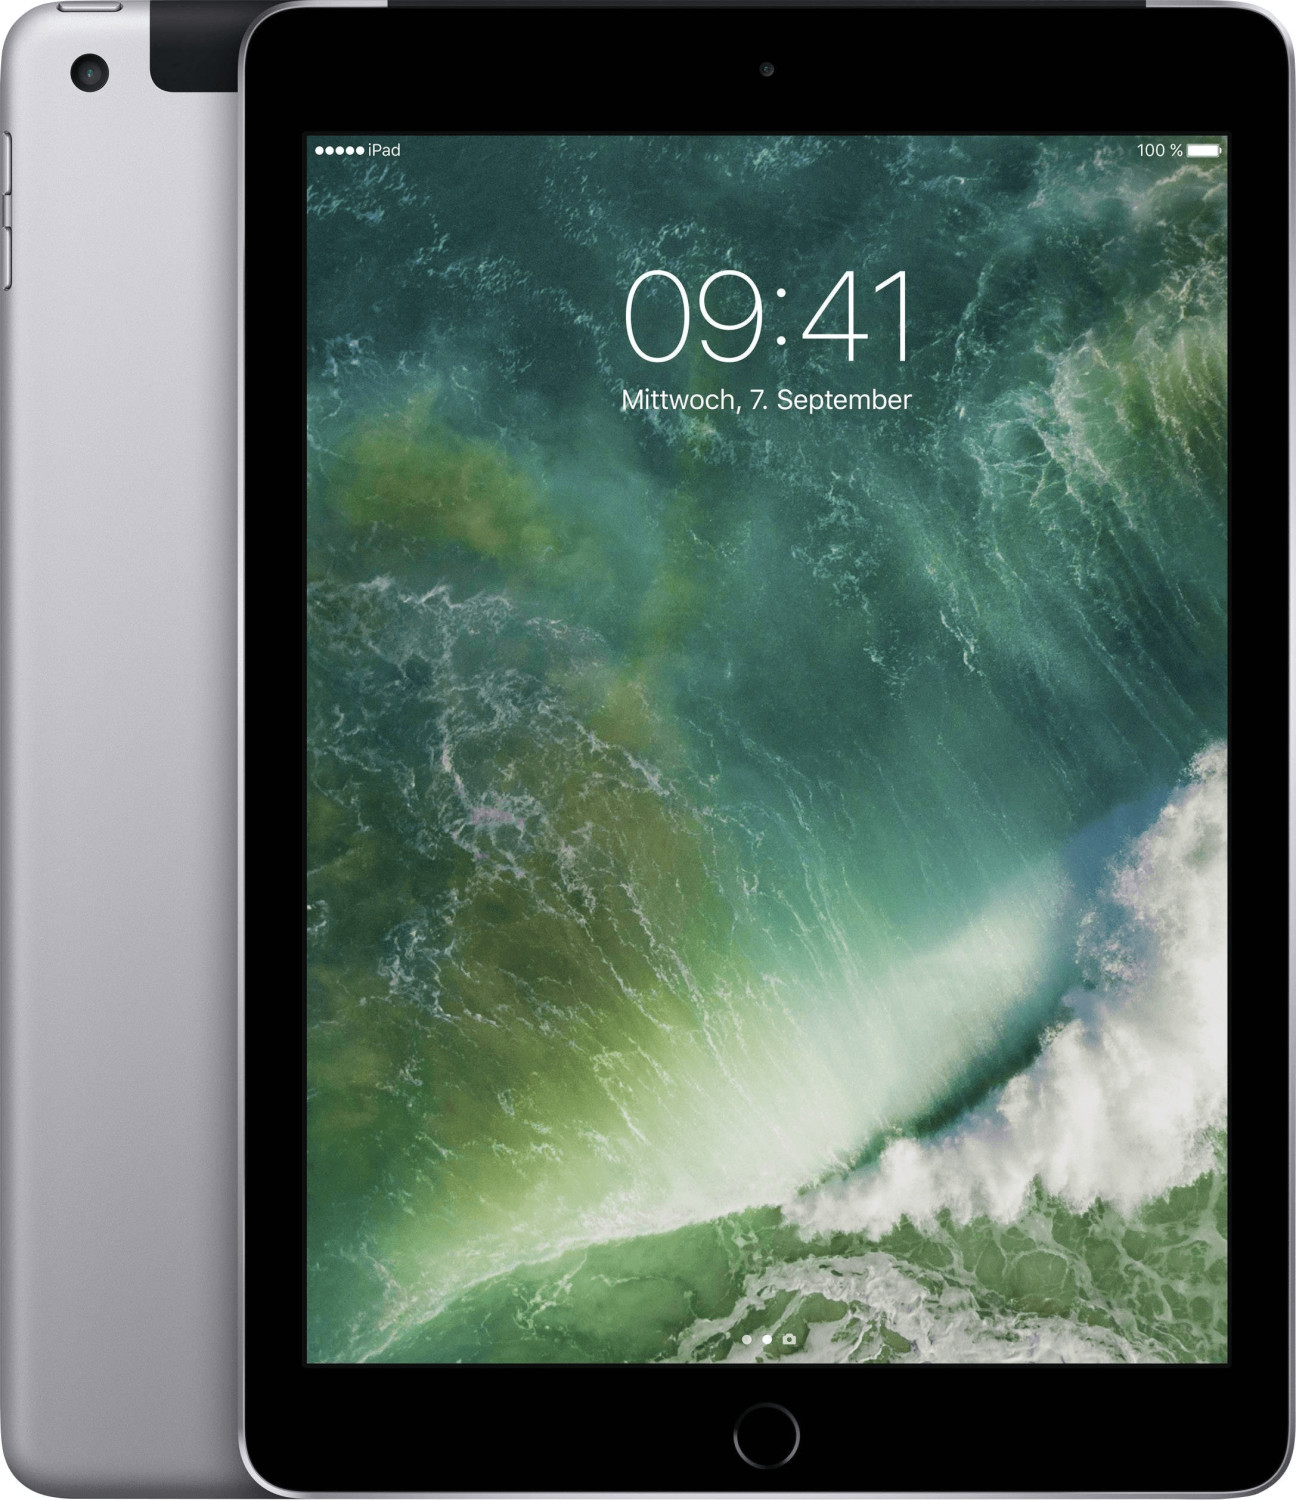 Apple iPad 32GB WiFi + 4G Space Grey (2017)